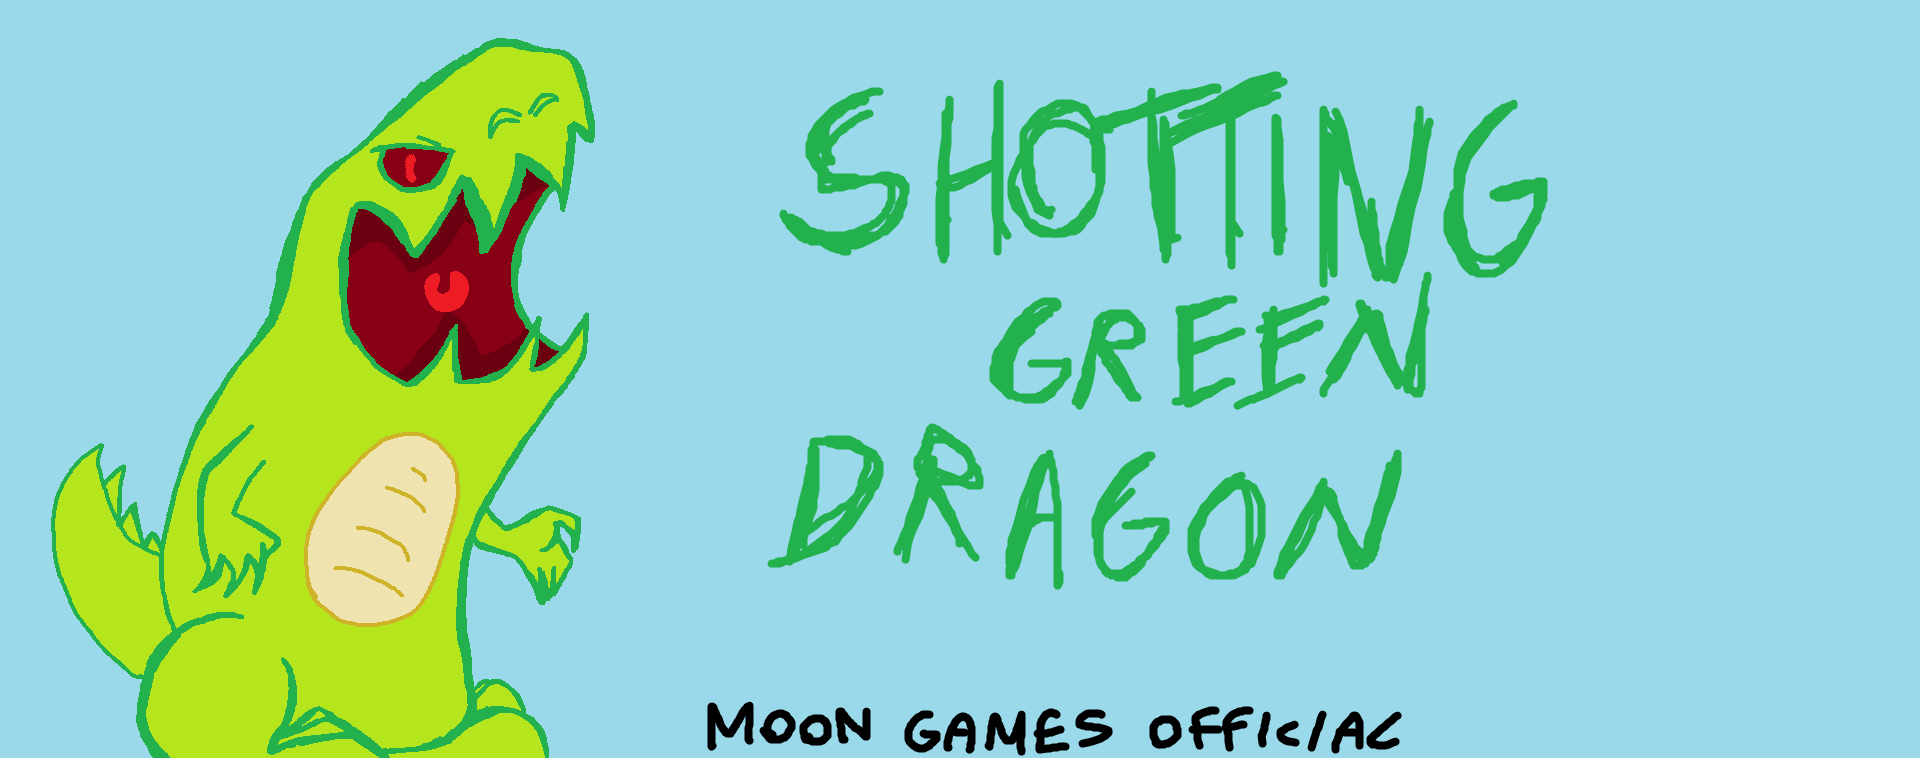 Shotting Green Dragon